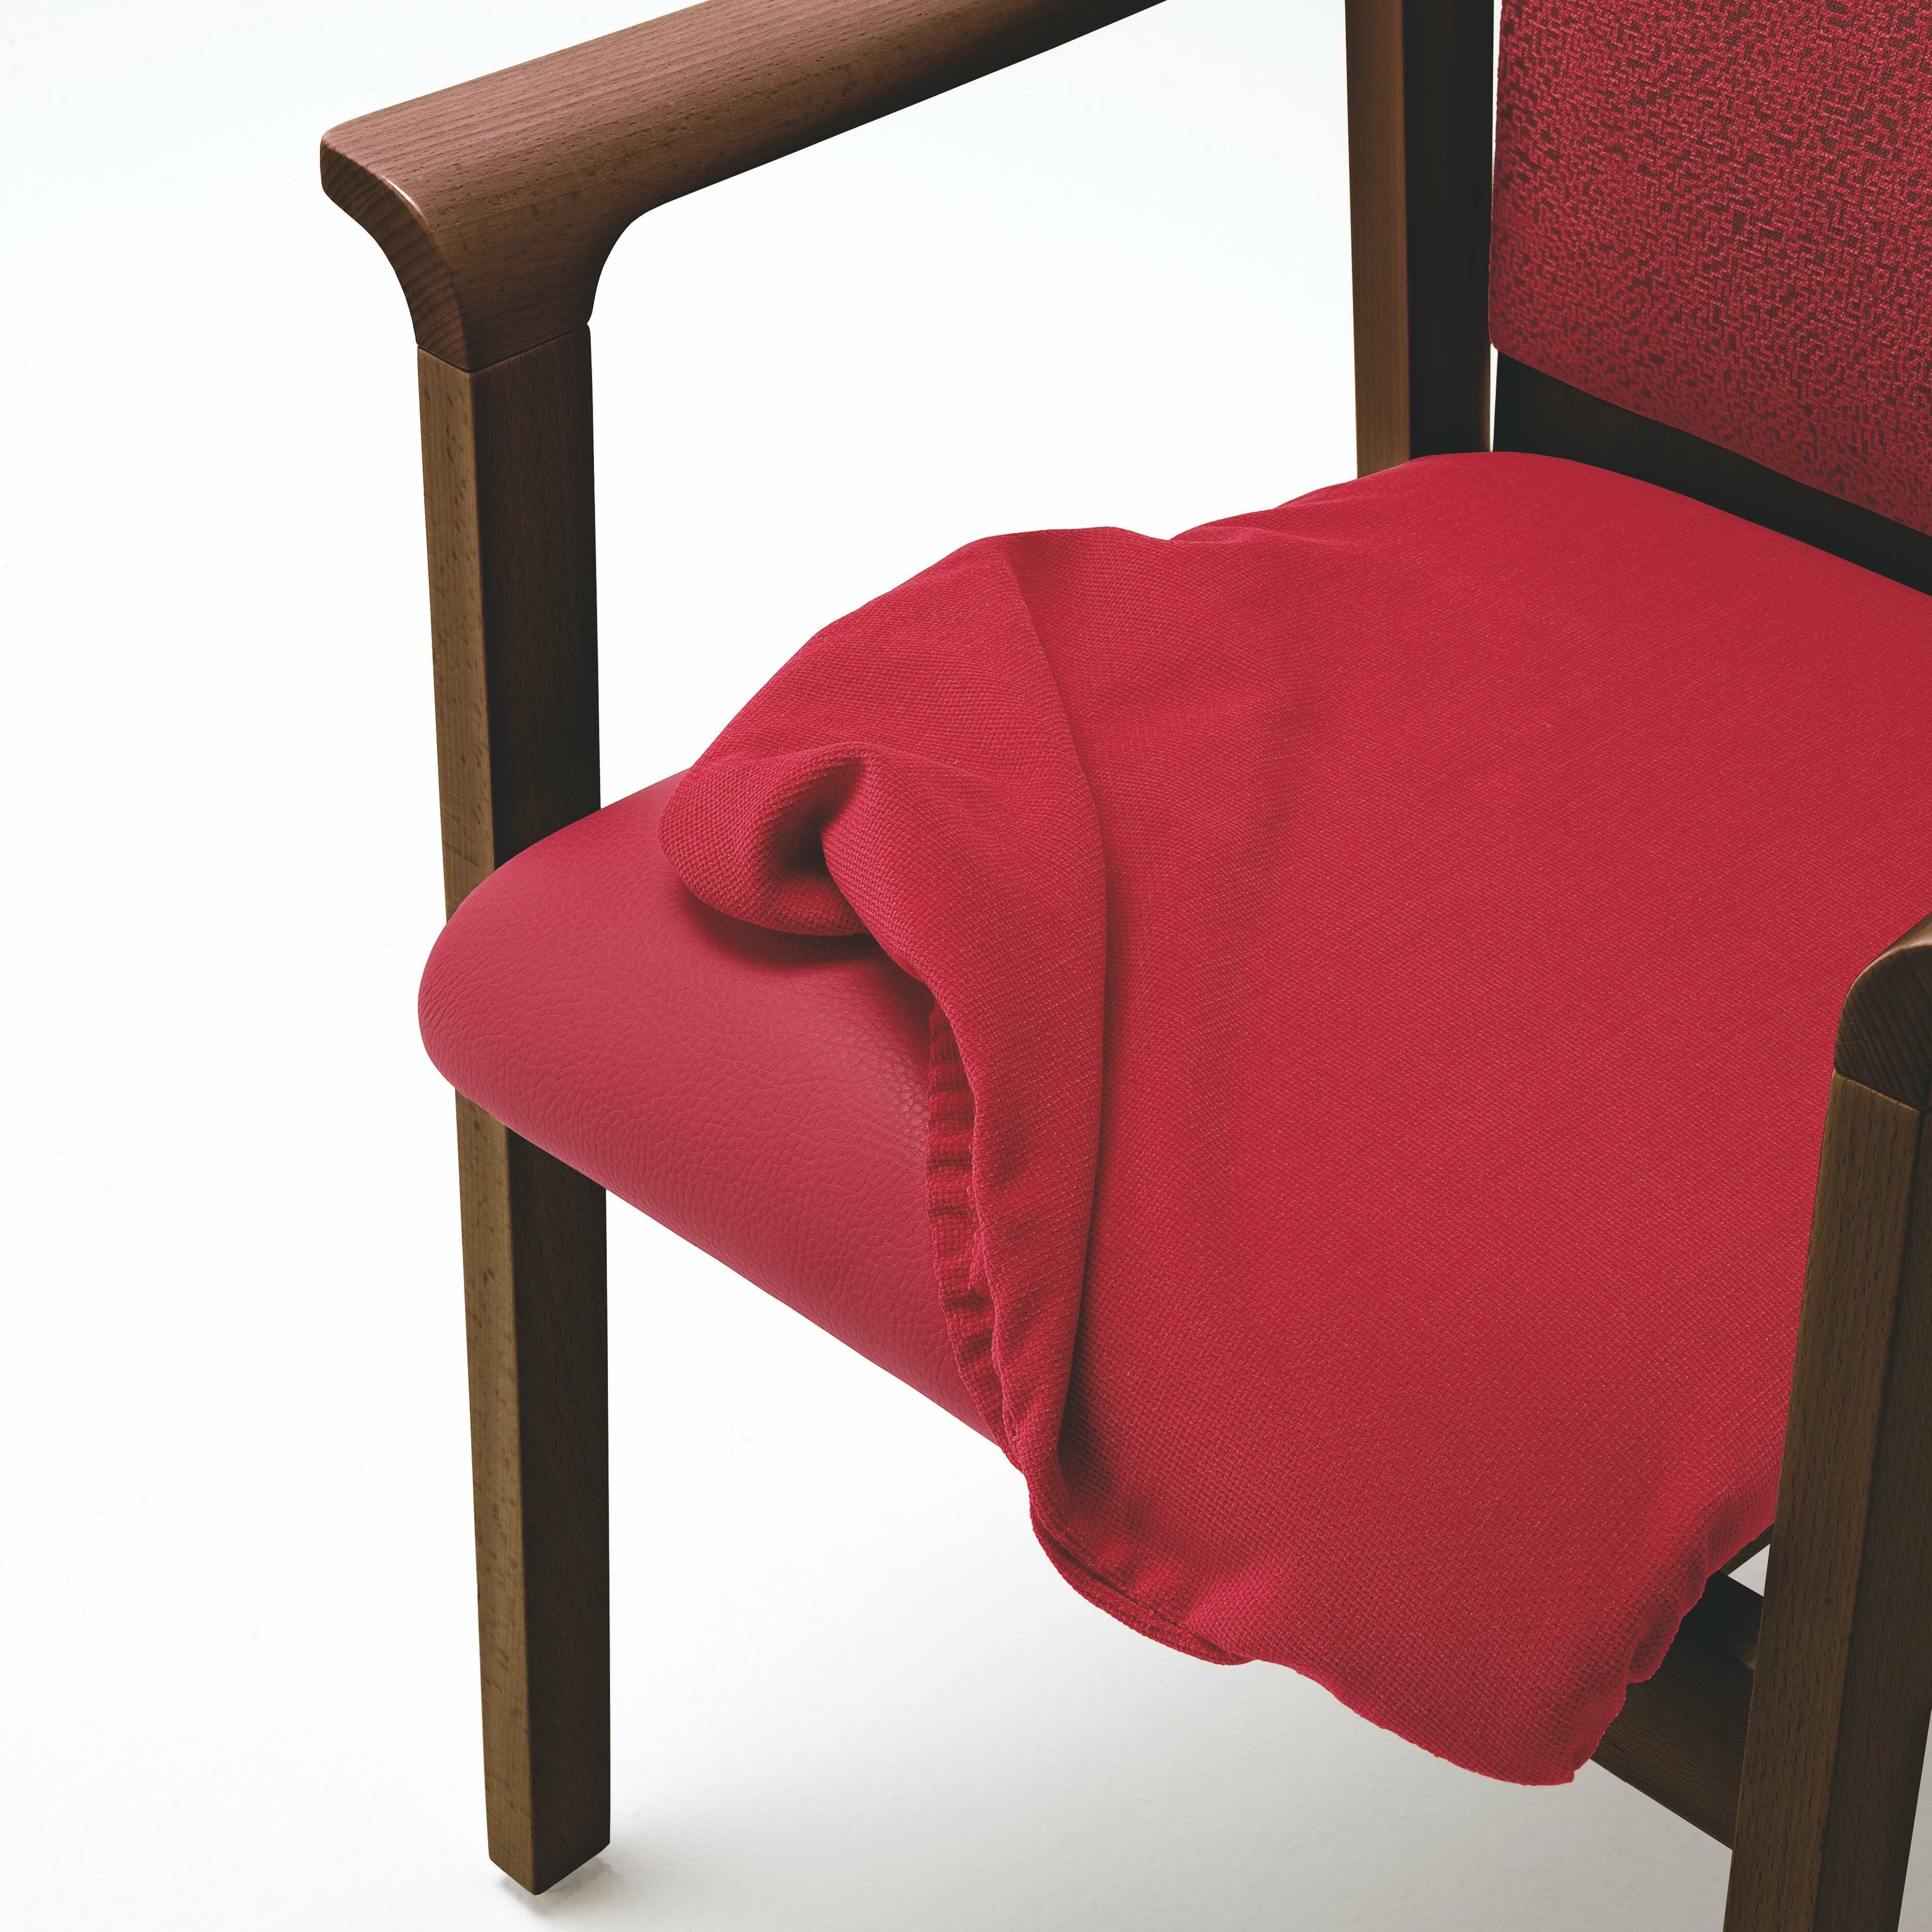 Grönemeyer Möbel für Alten- und Pflegeeinrichtungen | Evita | abnehmbare Sitzbezüge